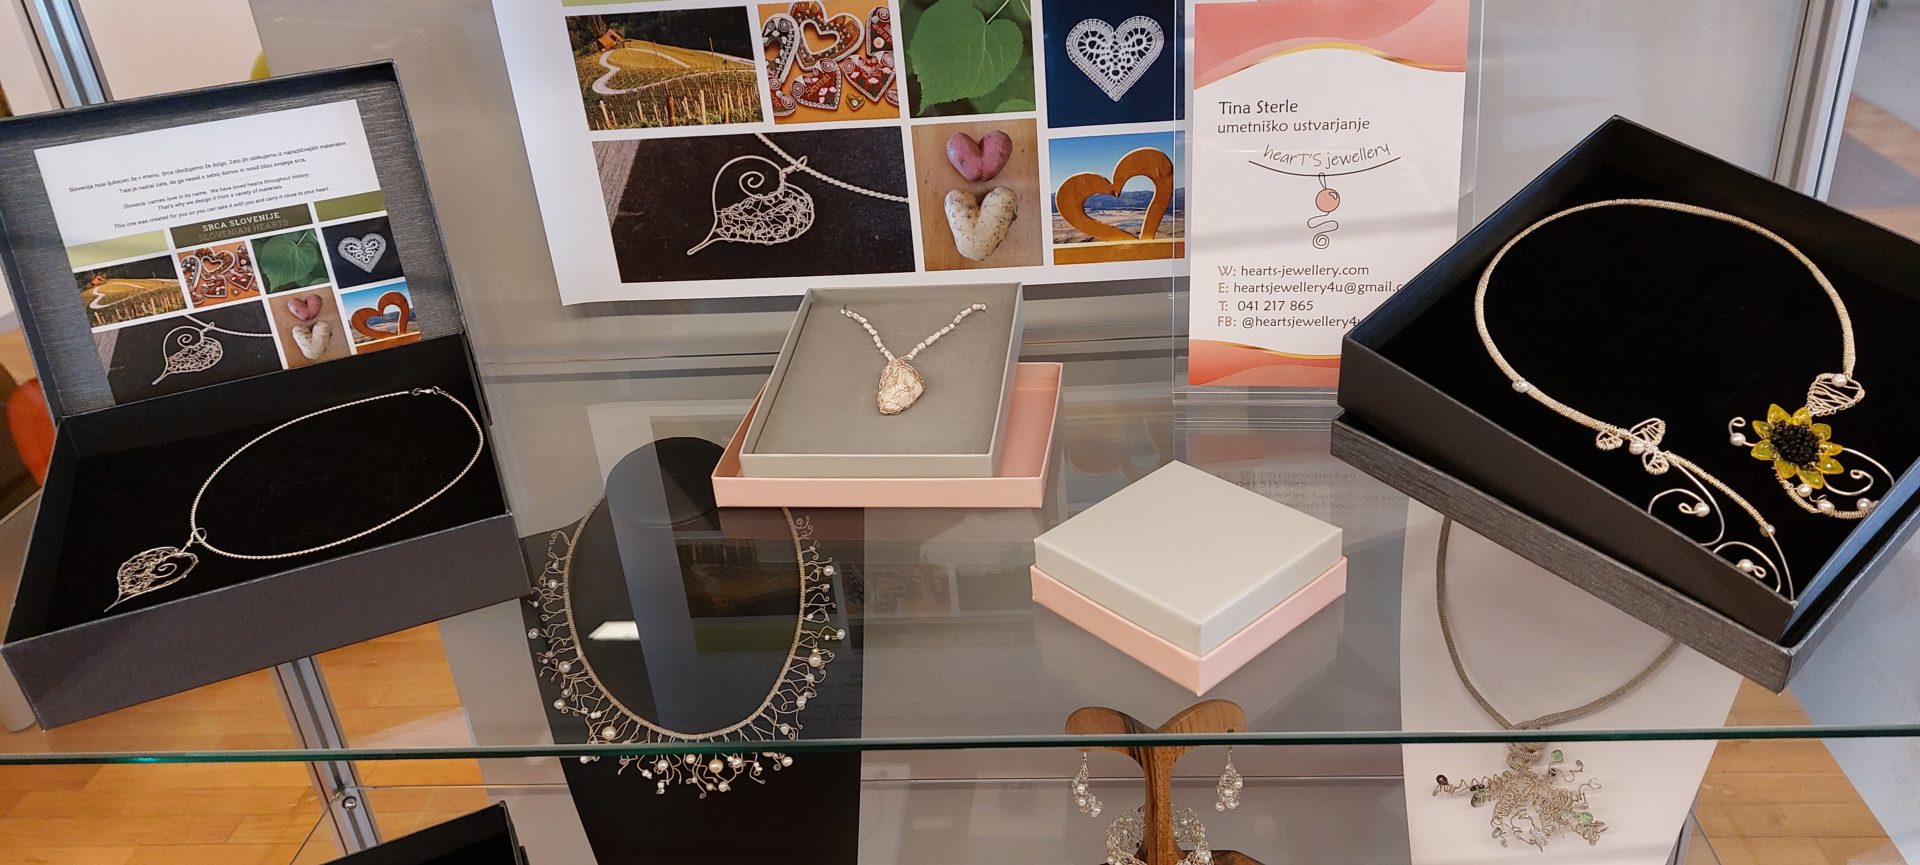 20220423 104304 - Heart's jewellery - razstava kvačkanega nakita iz žice in pletene žice ustvarjalke Tine Sterle